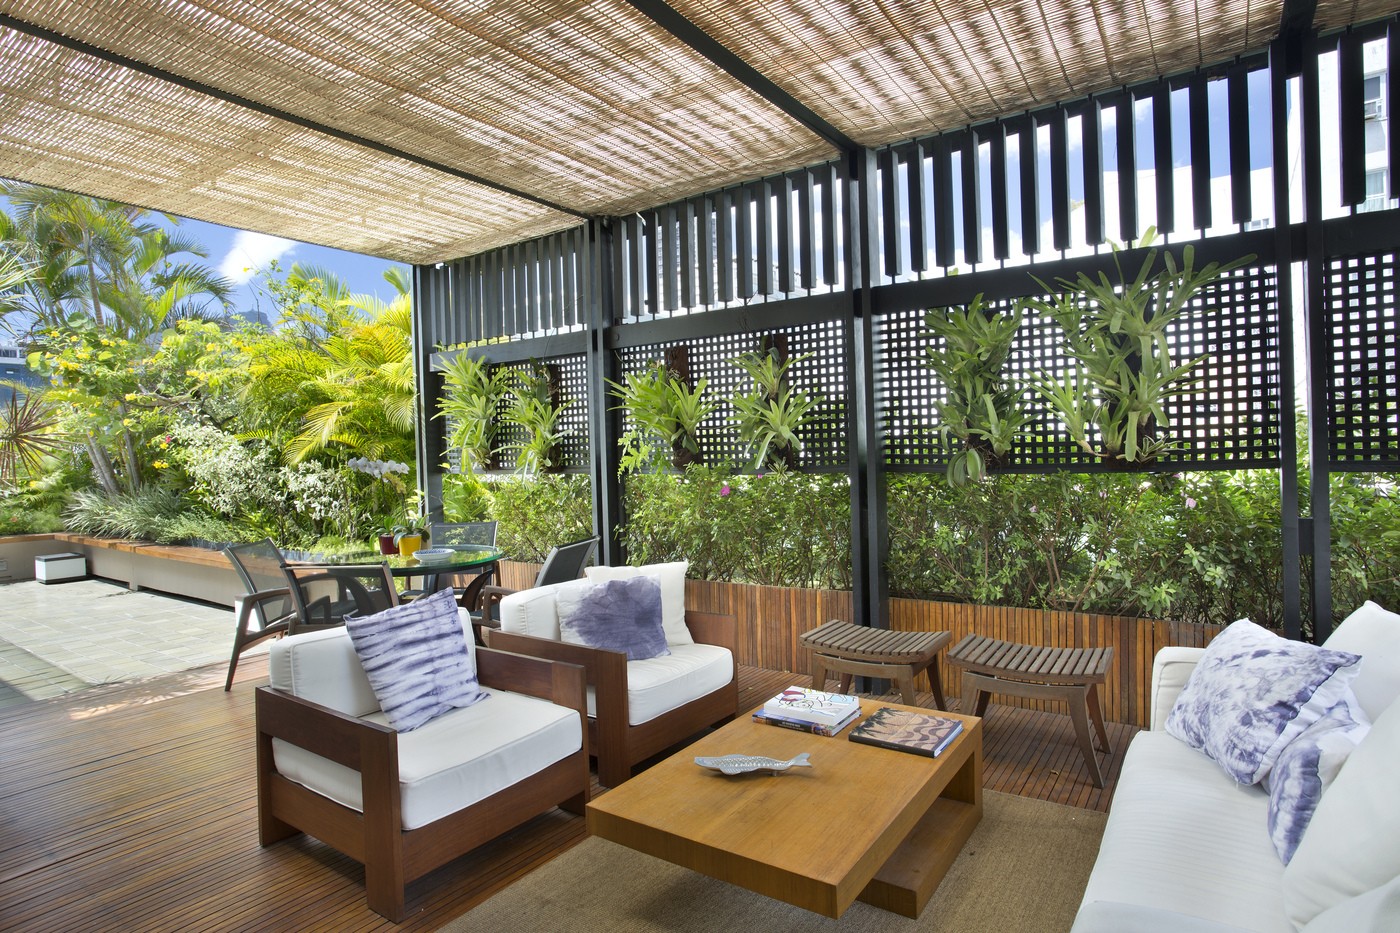 Décor do dia: terraço com jardim e deck de madeira para curtir ao ar livre (Foto: Juliano Colodeti/ MCA Estúdio)